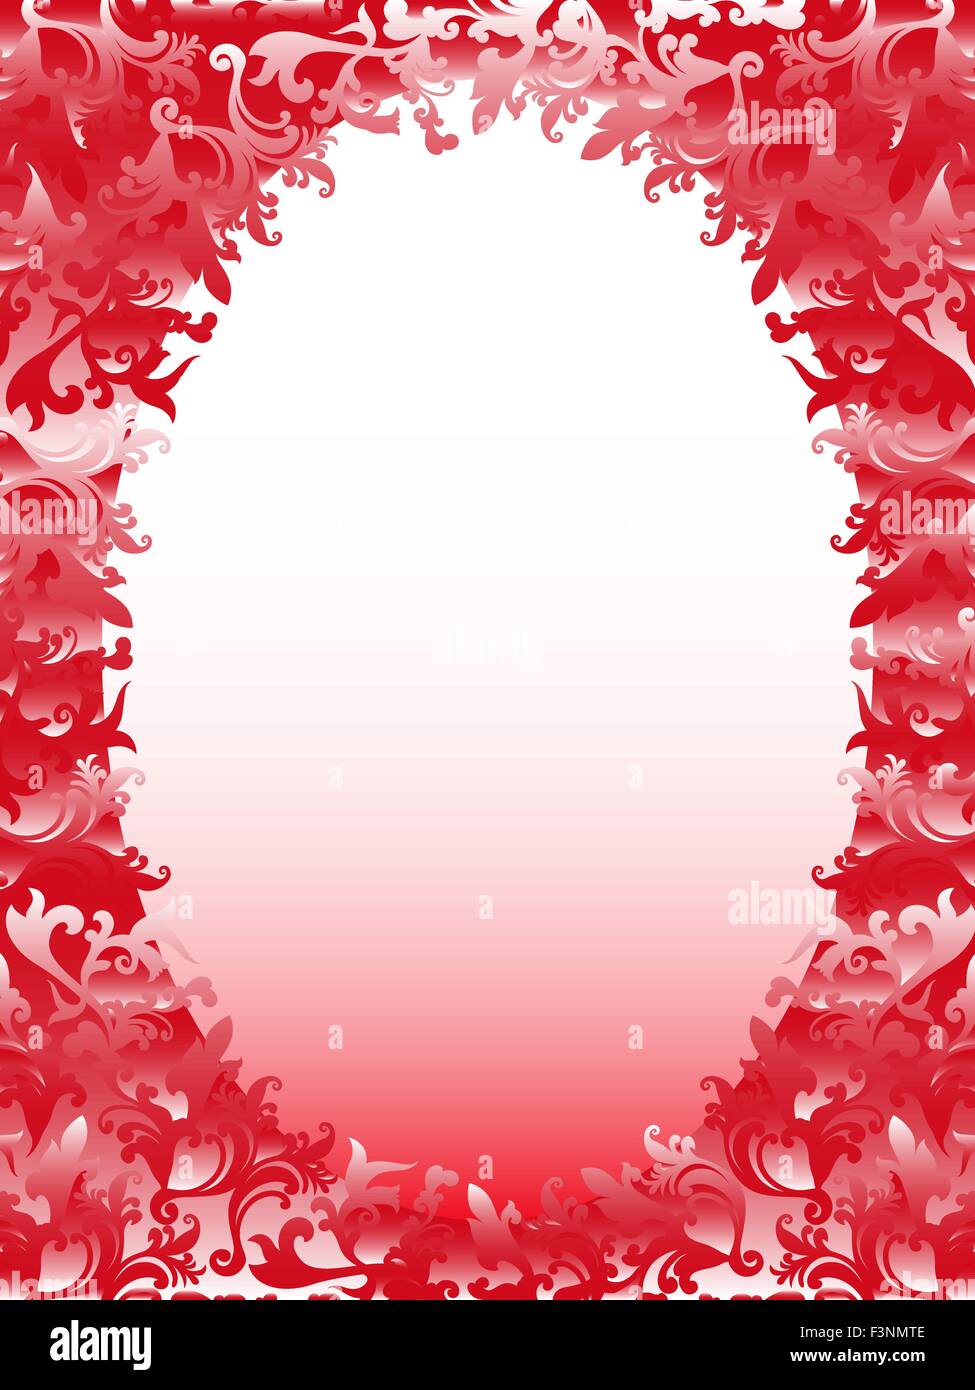 Cadre ovale verticale avec des éléments floraux dans des teintes rose, dessin à la main vector illustration Illustration de Vecteur